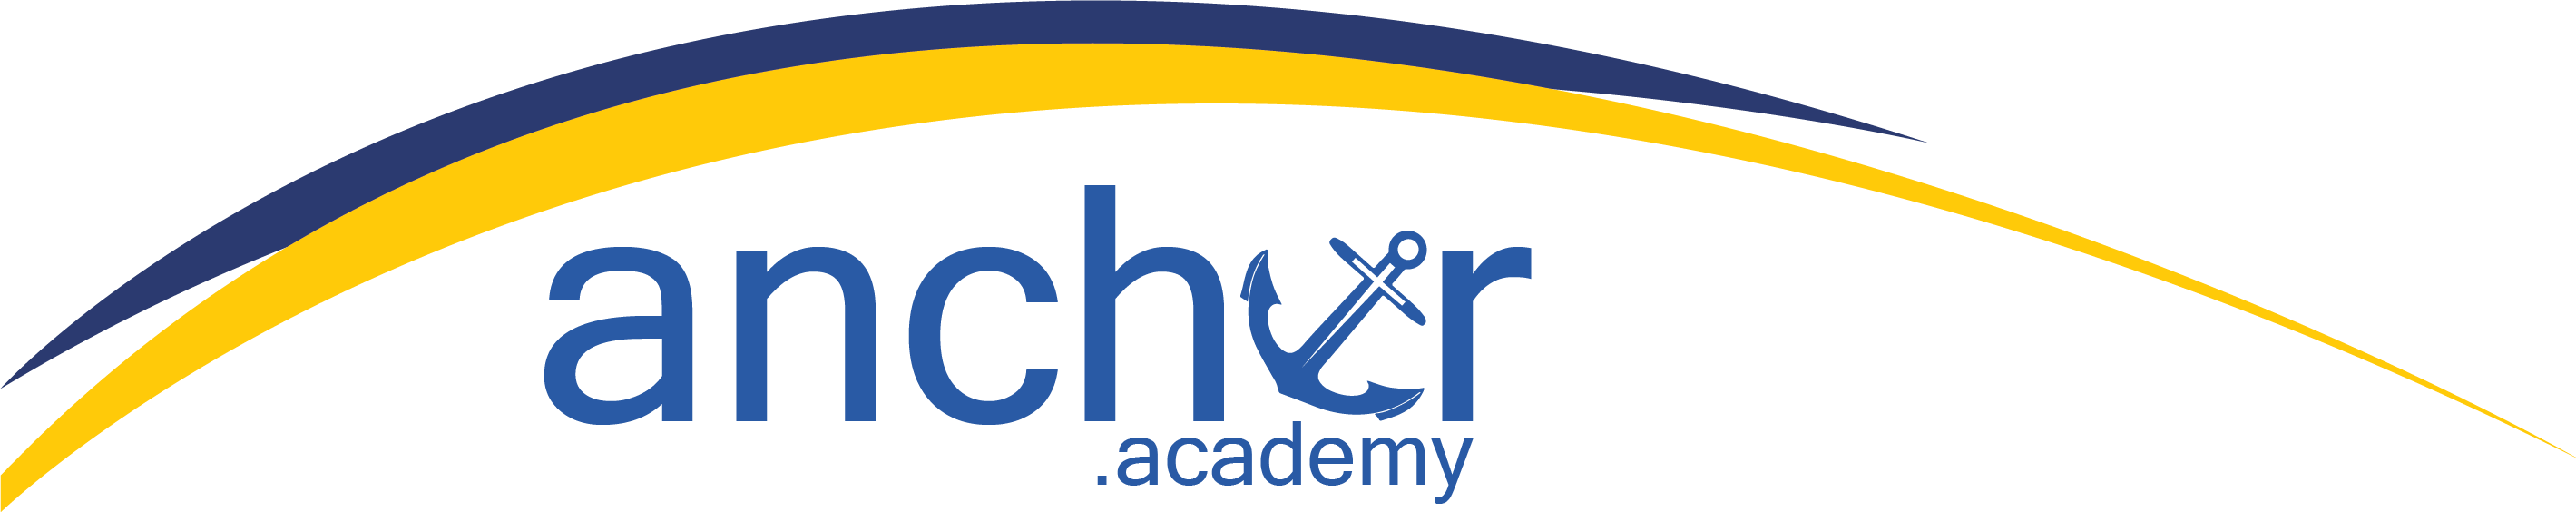 Anchor Academy Society